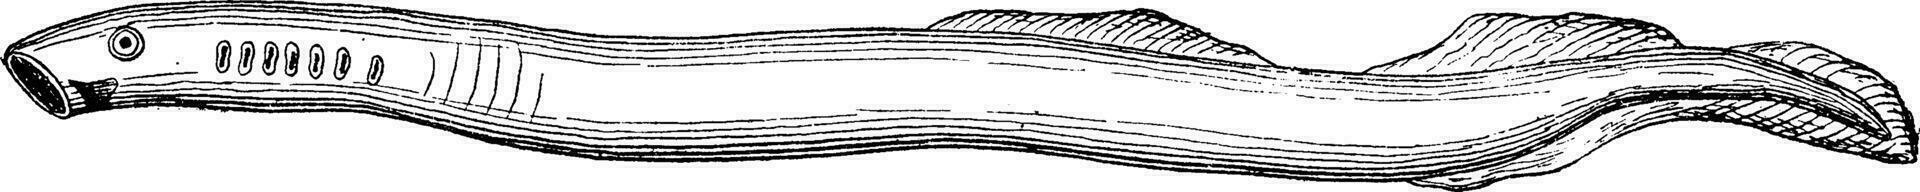 lamprea rudimentario primitivo pez, Clásico grabado. vector